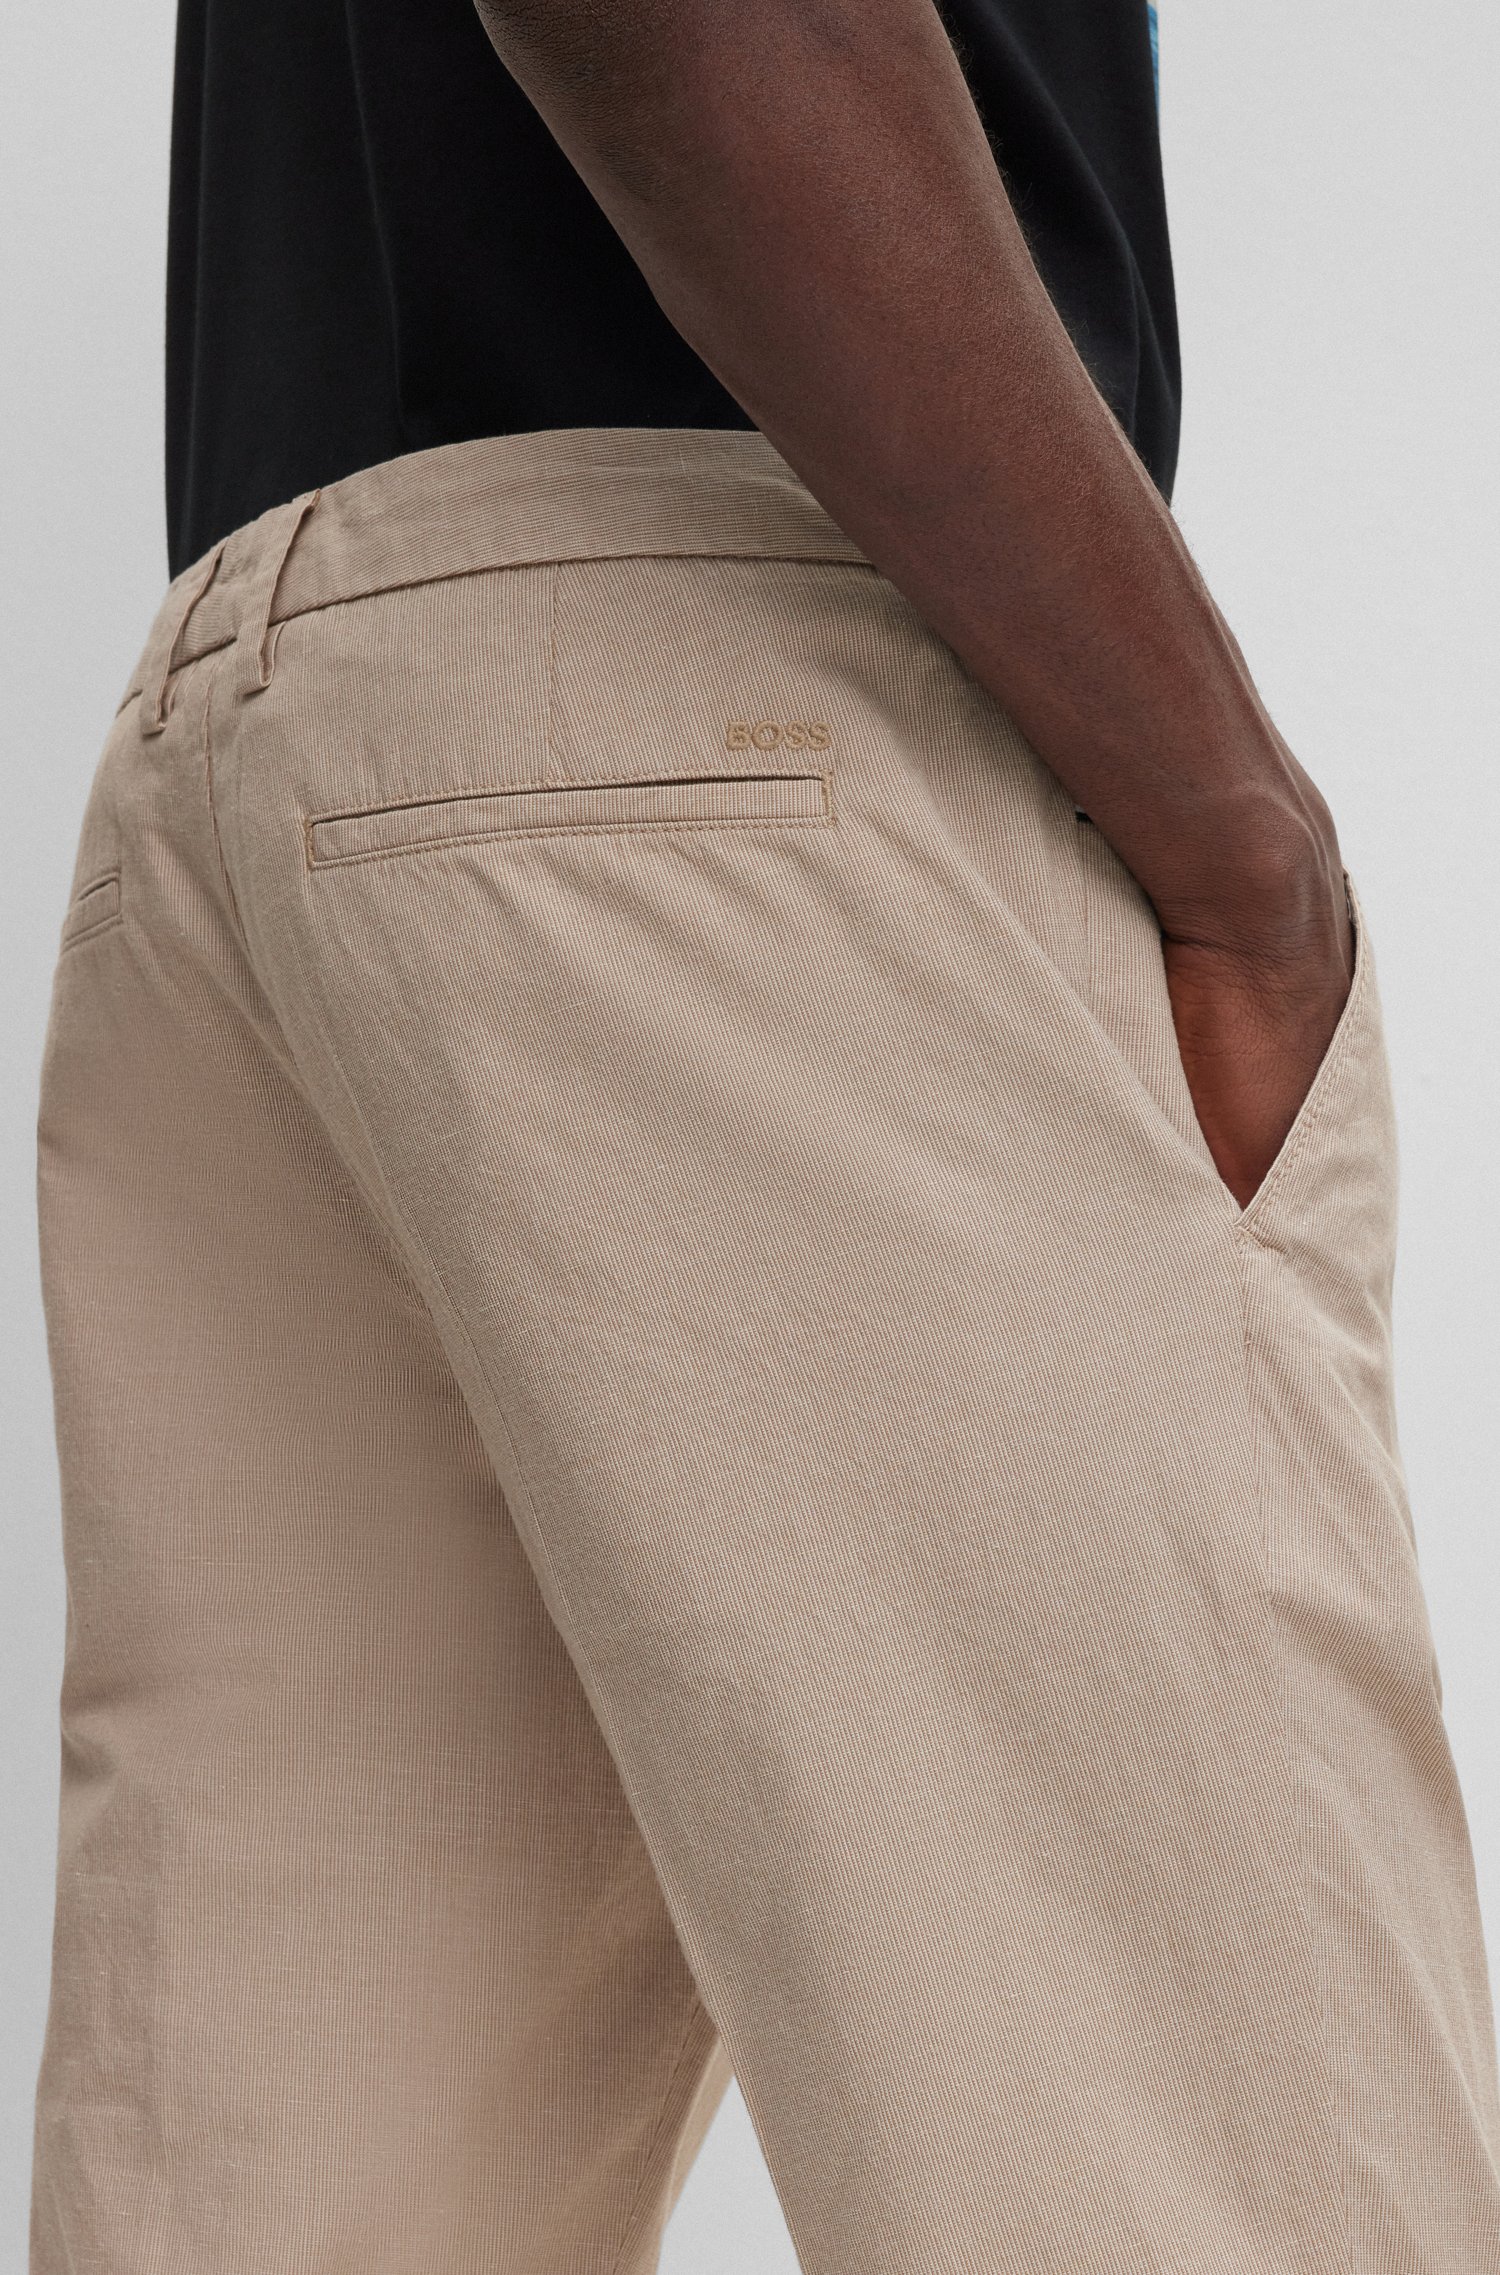 Pantalones slim fit en mezcla de algodón elástico estampado